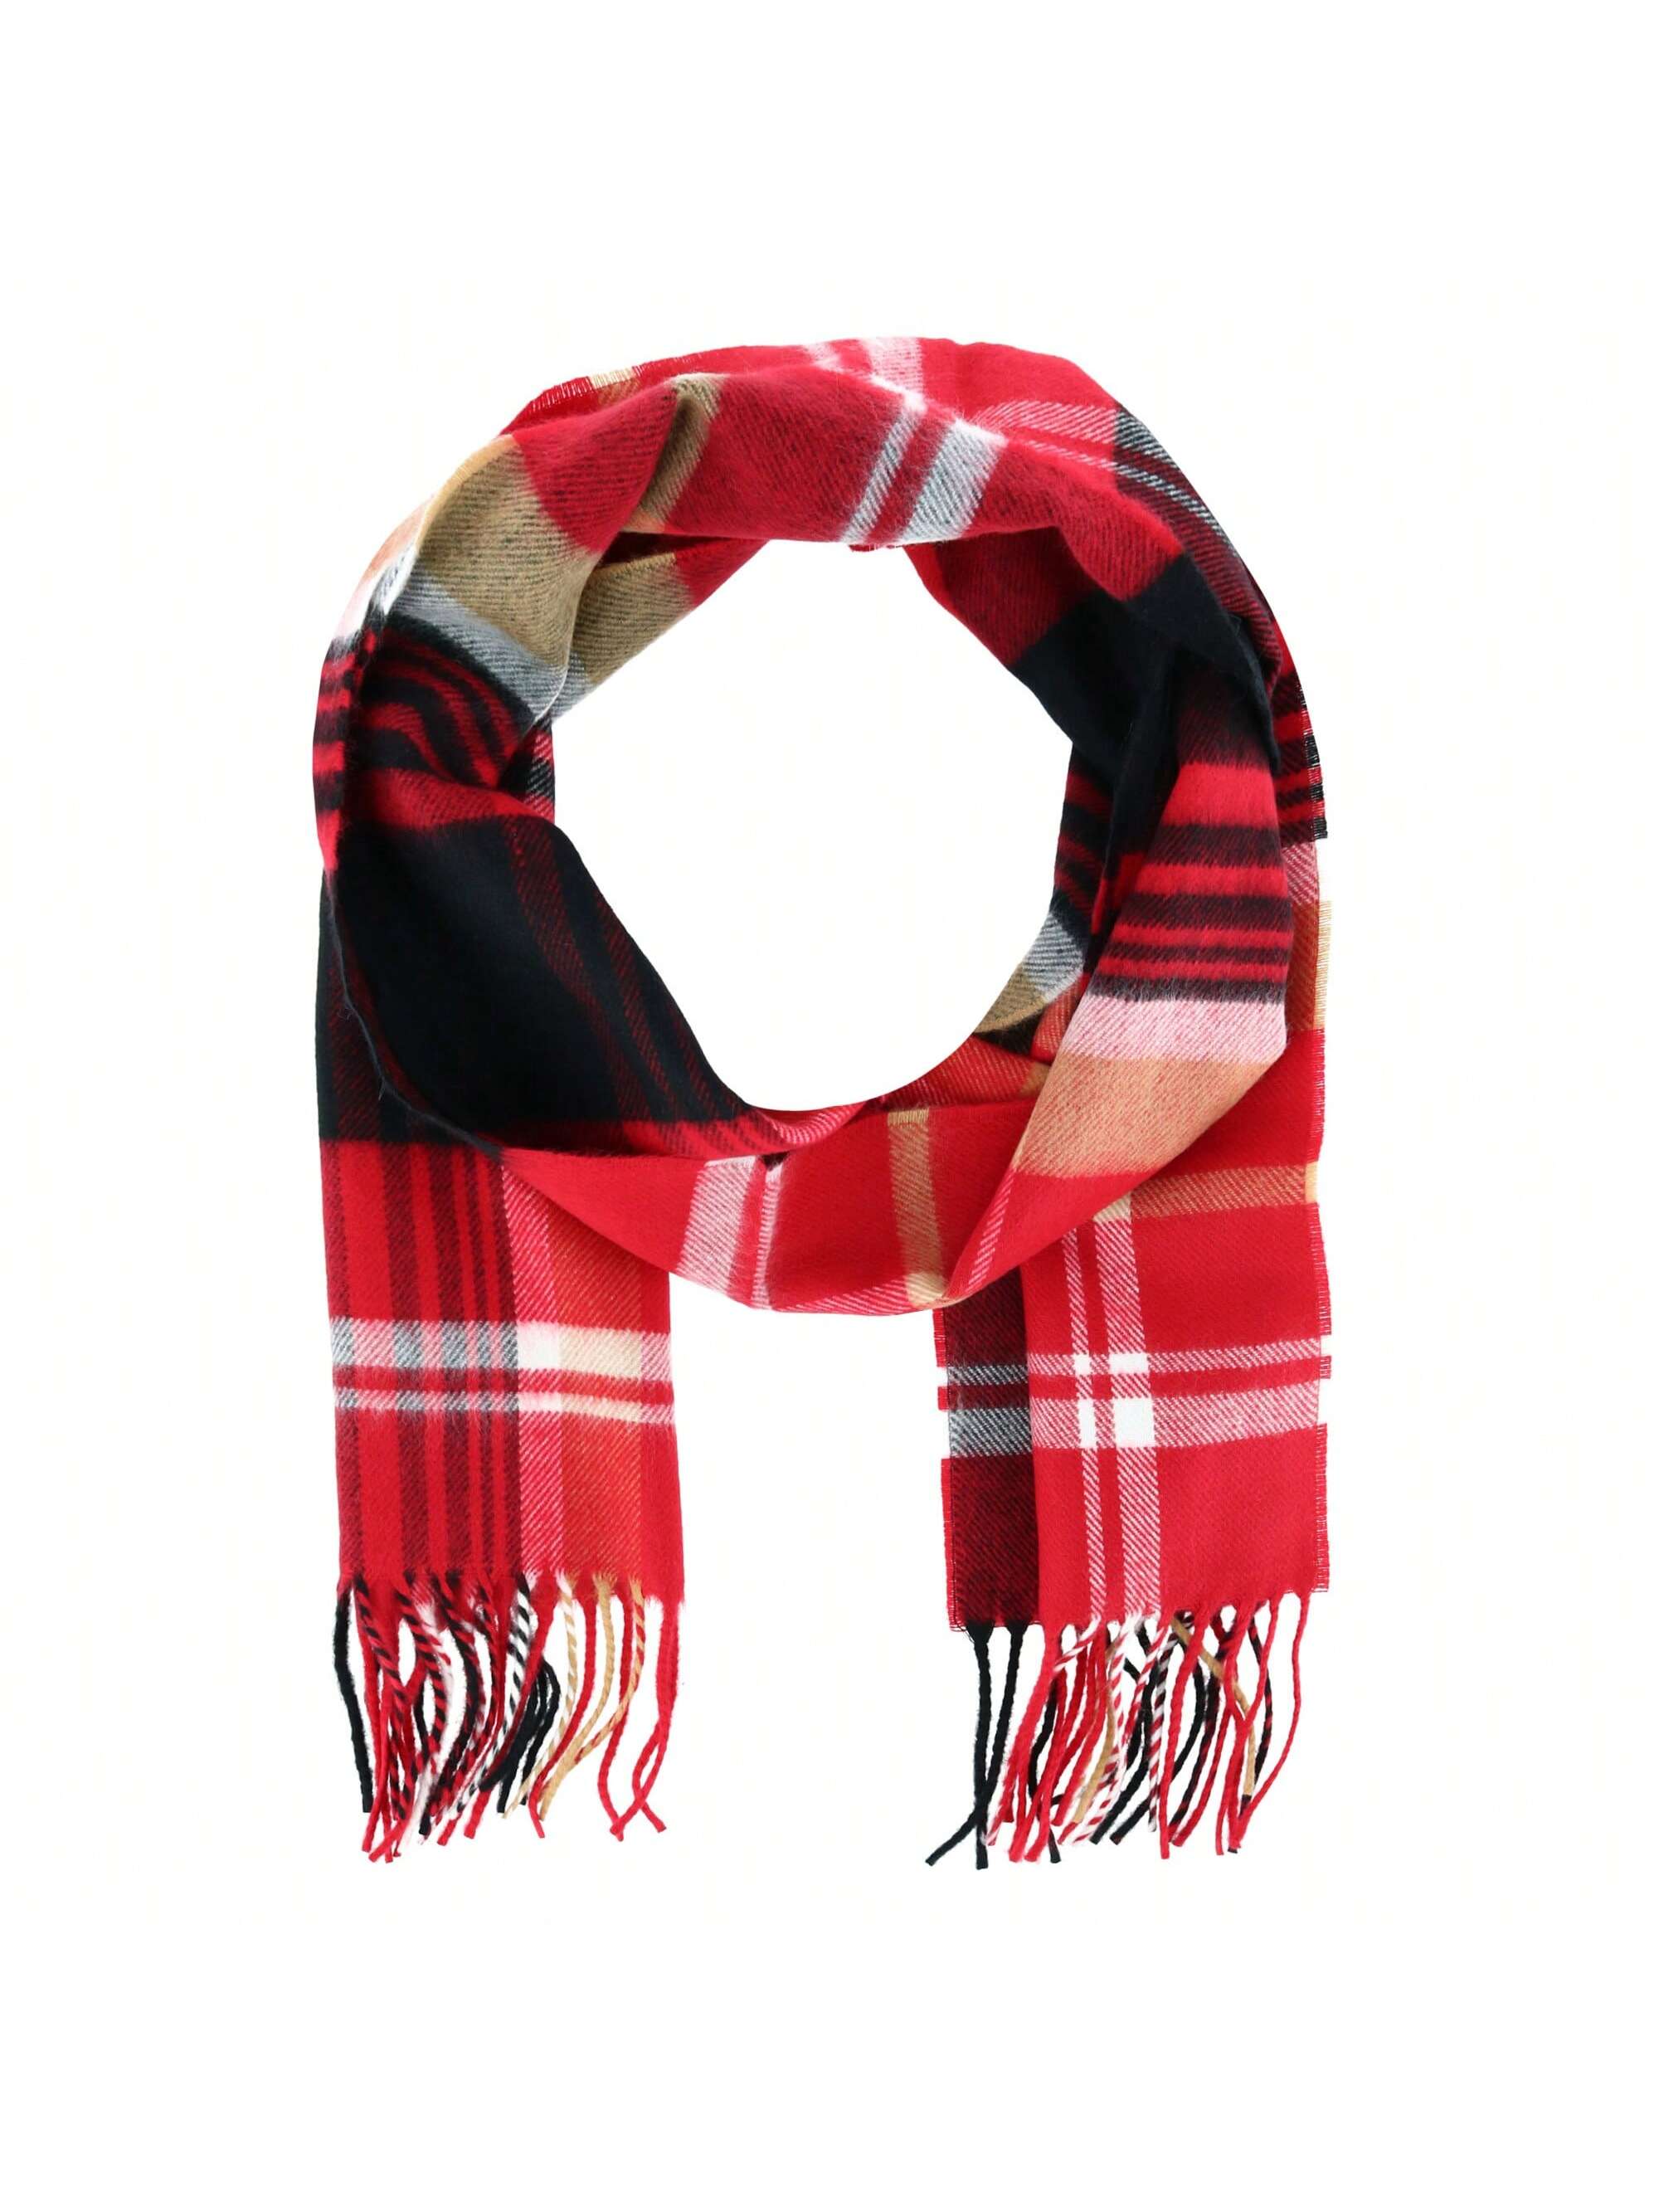 Мягкий зимний шарф в клетку David & Young, красный и черный